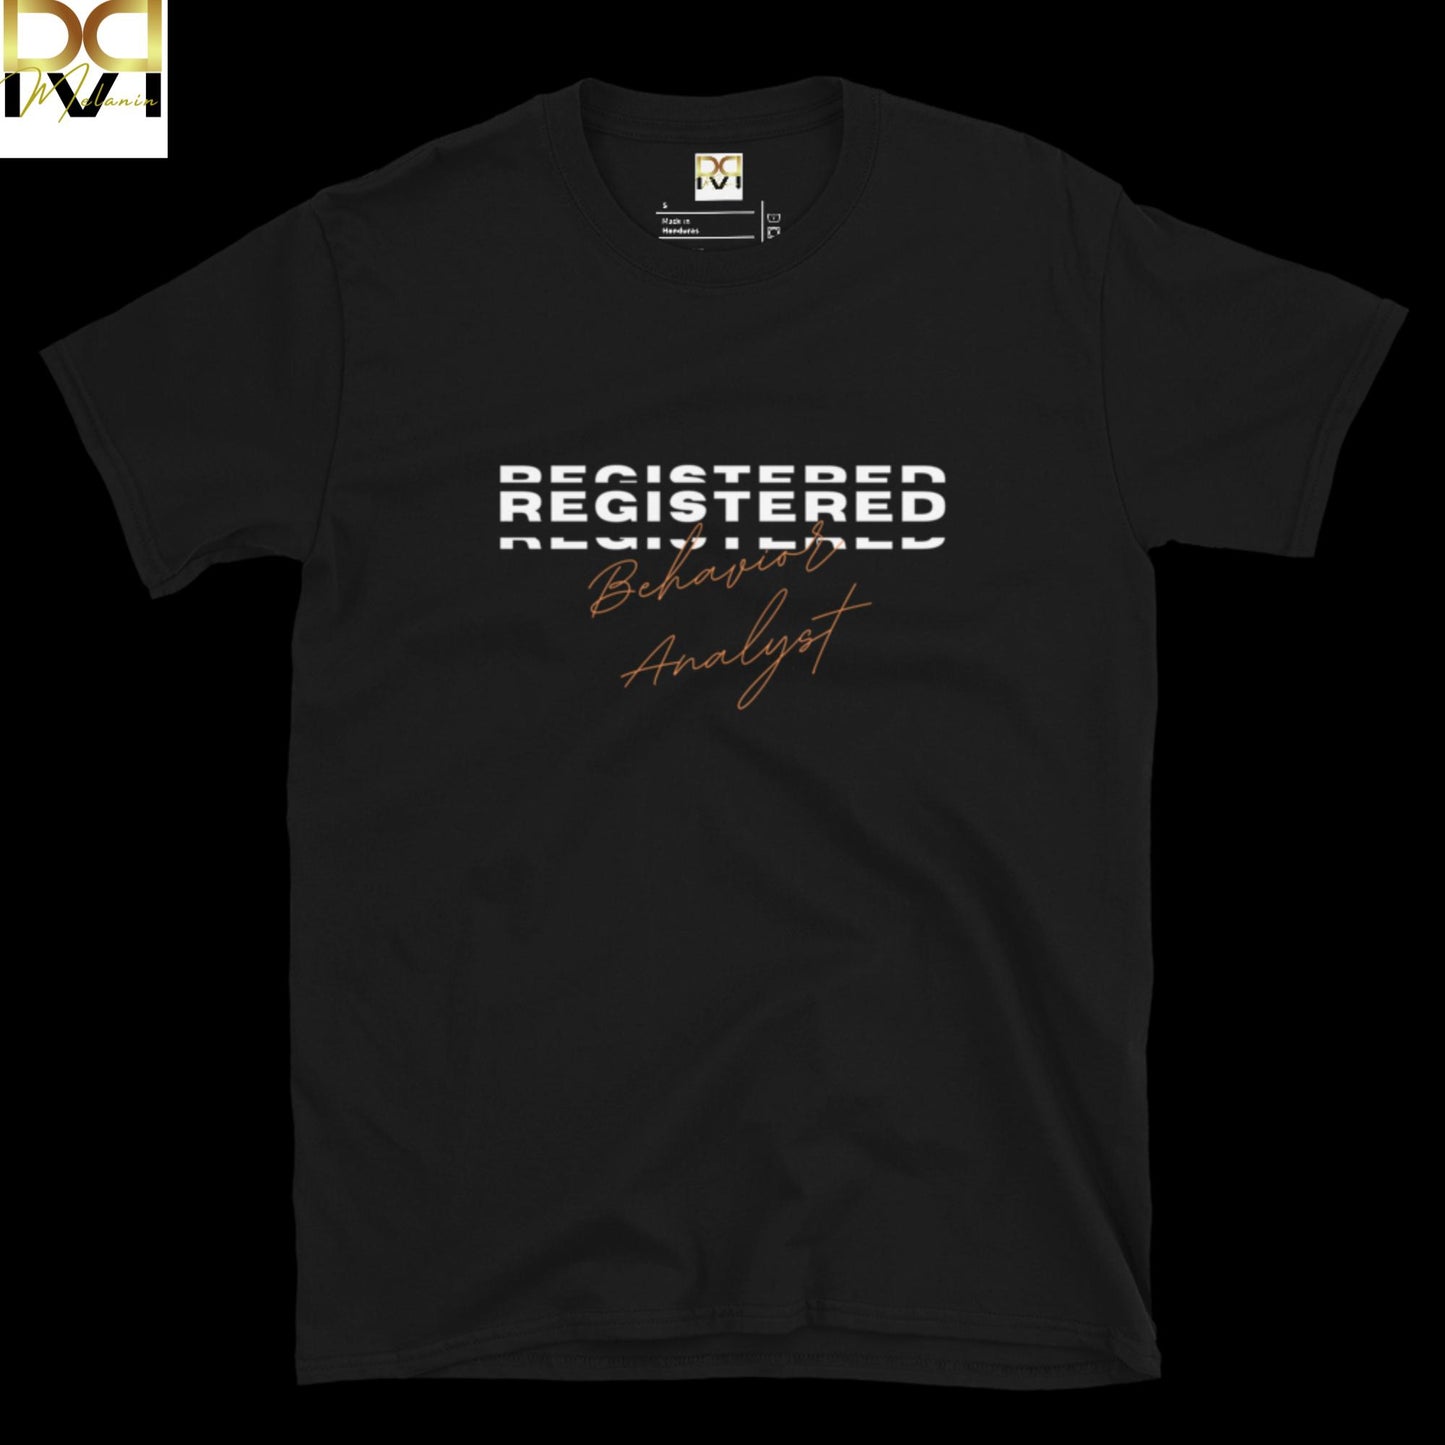 Registered Black Behavior Analyst" T-Shirt - Your New Favorite Wardrobe Staple